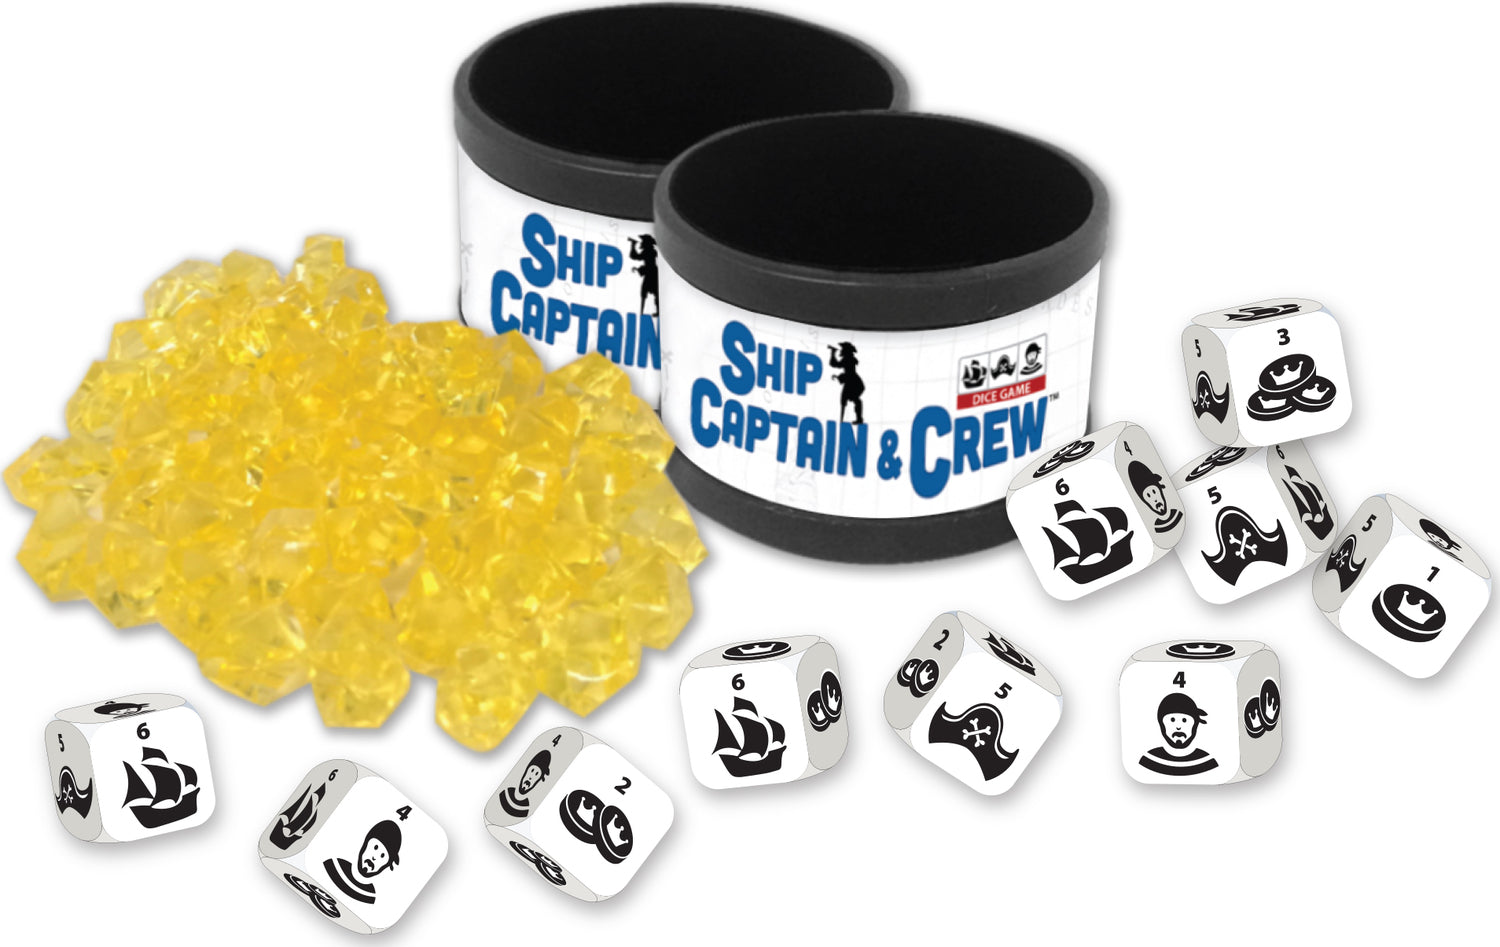 Ship, Captain & Crew